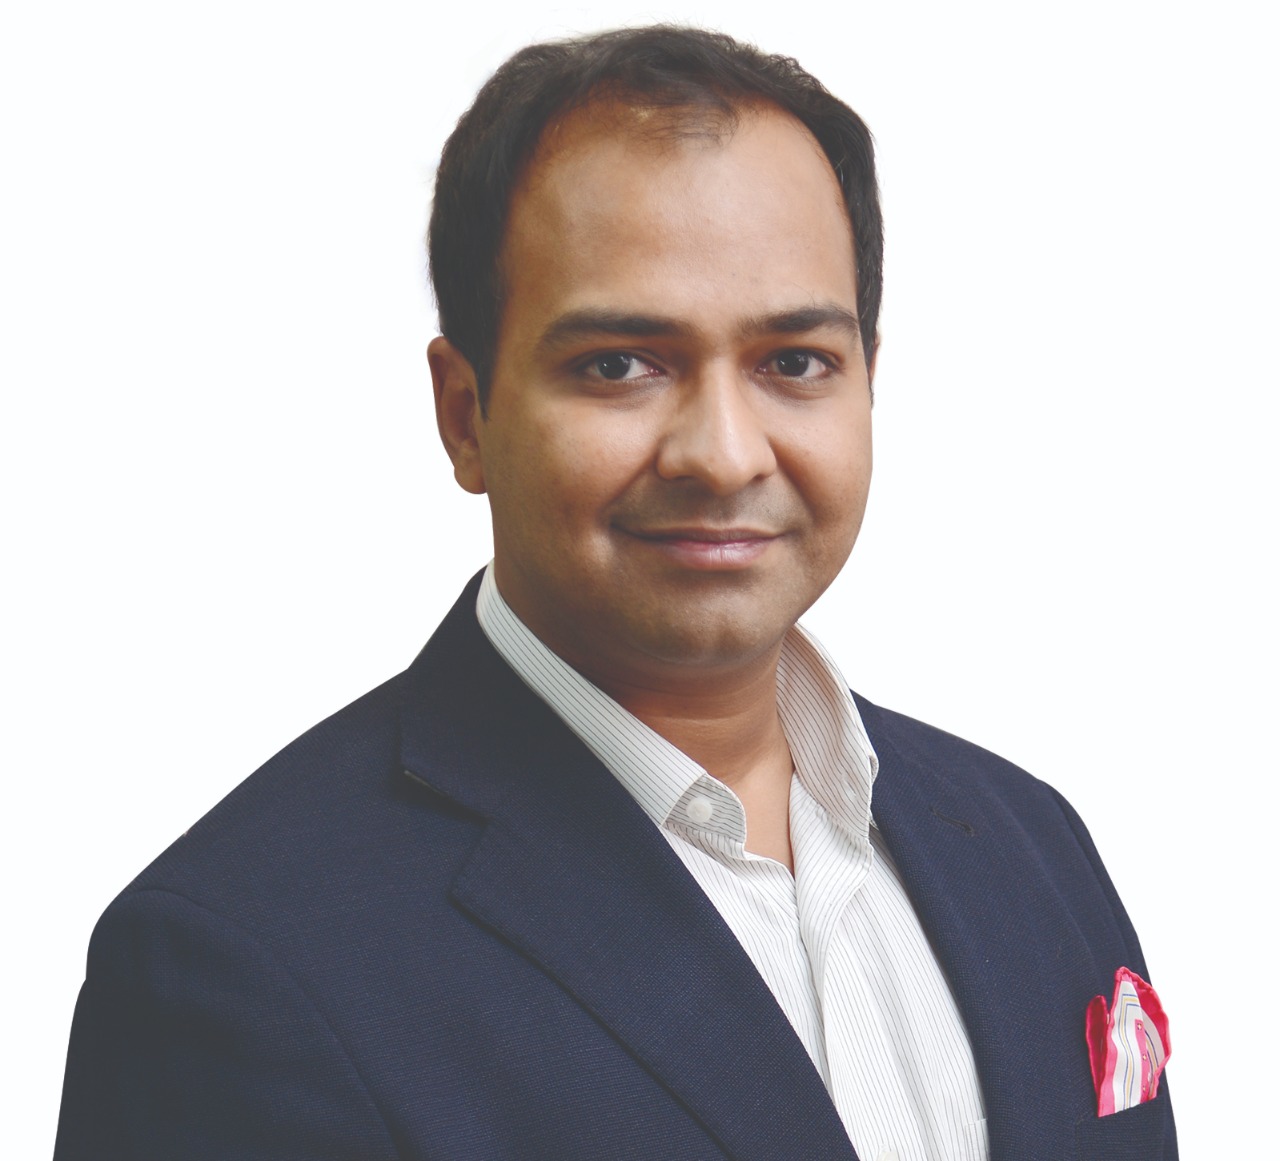 Mr. Yashovardhan Gupta, Managing Director, Torero Corporation